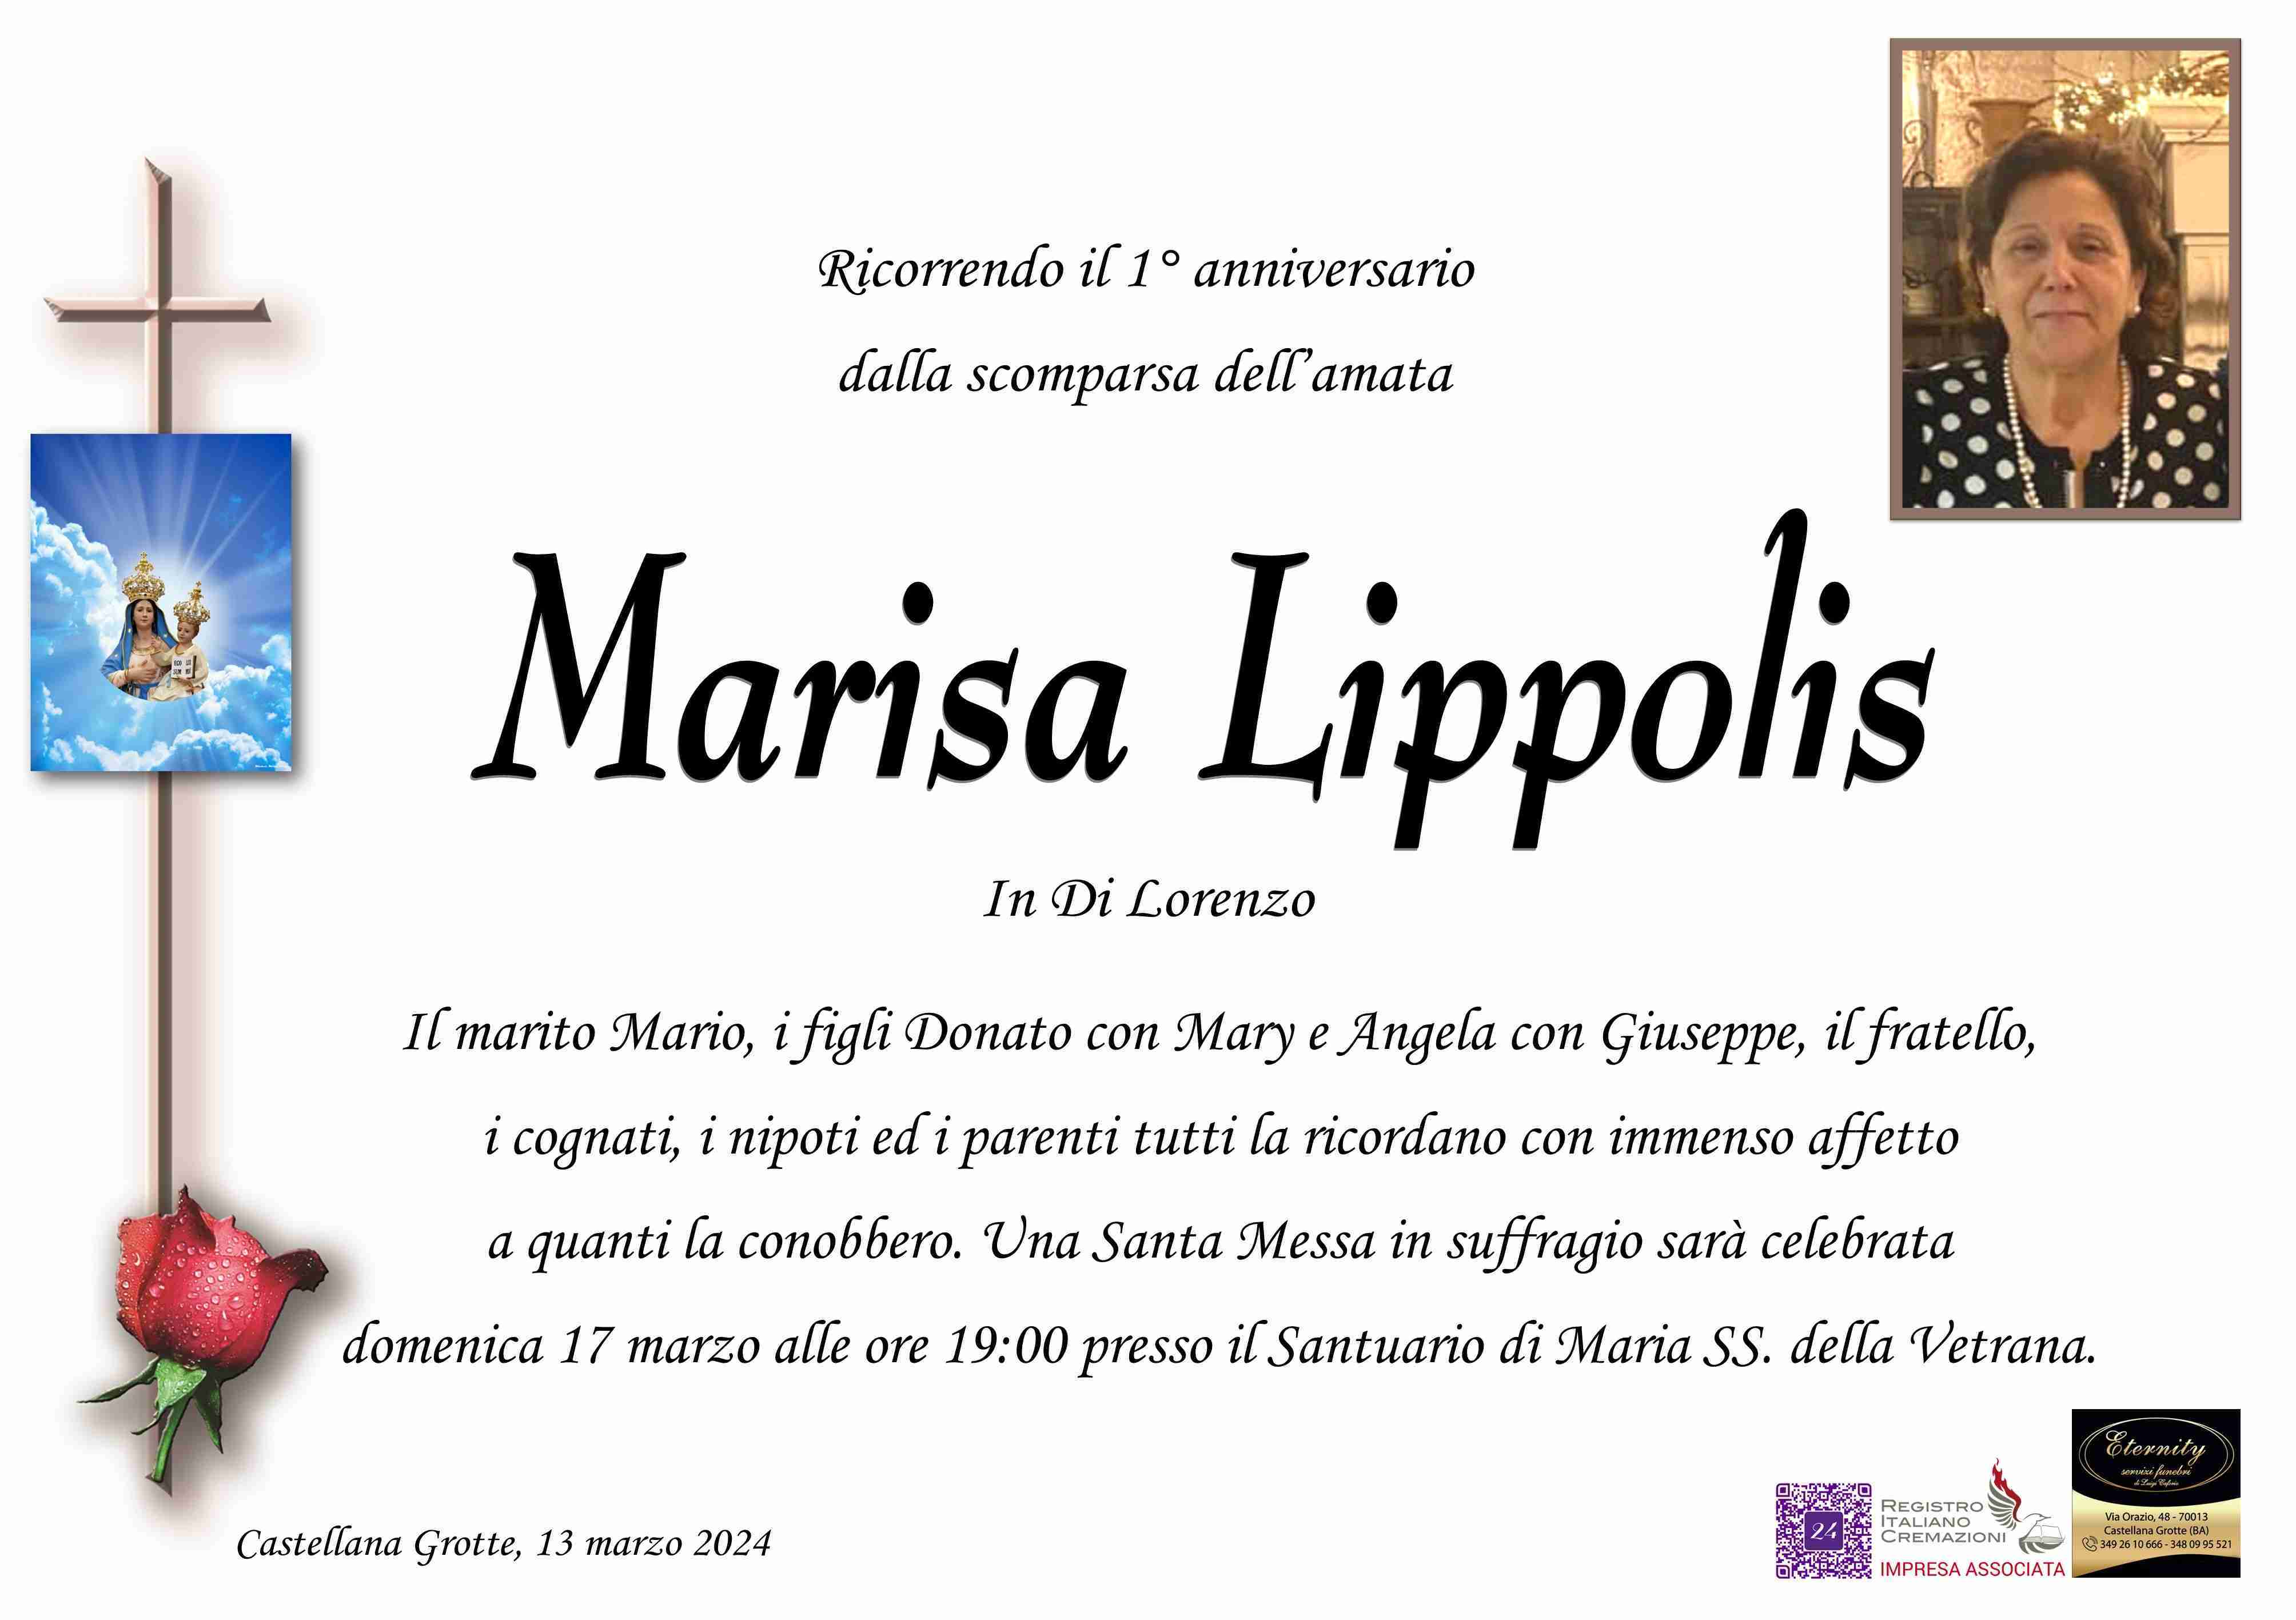 Marisa Lippolis